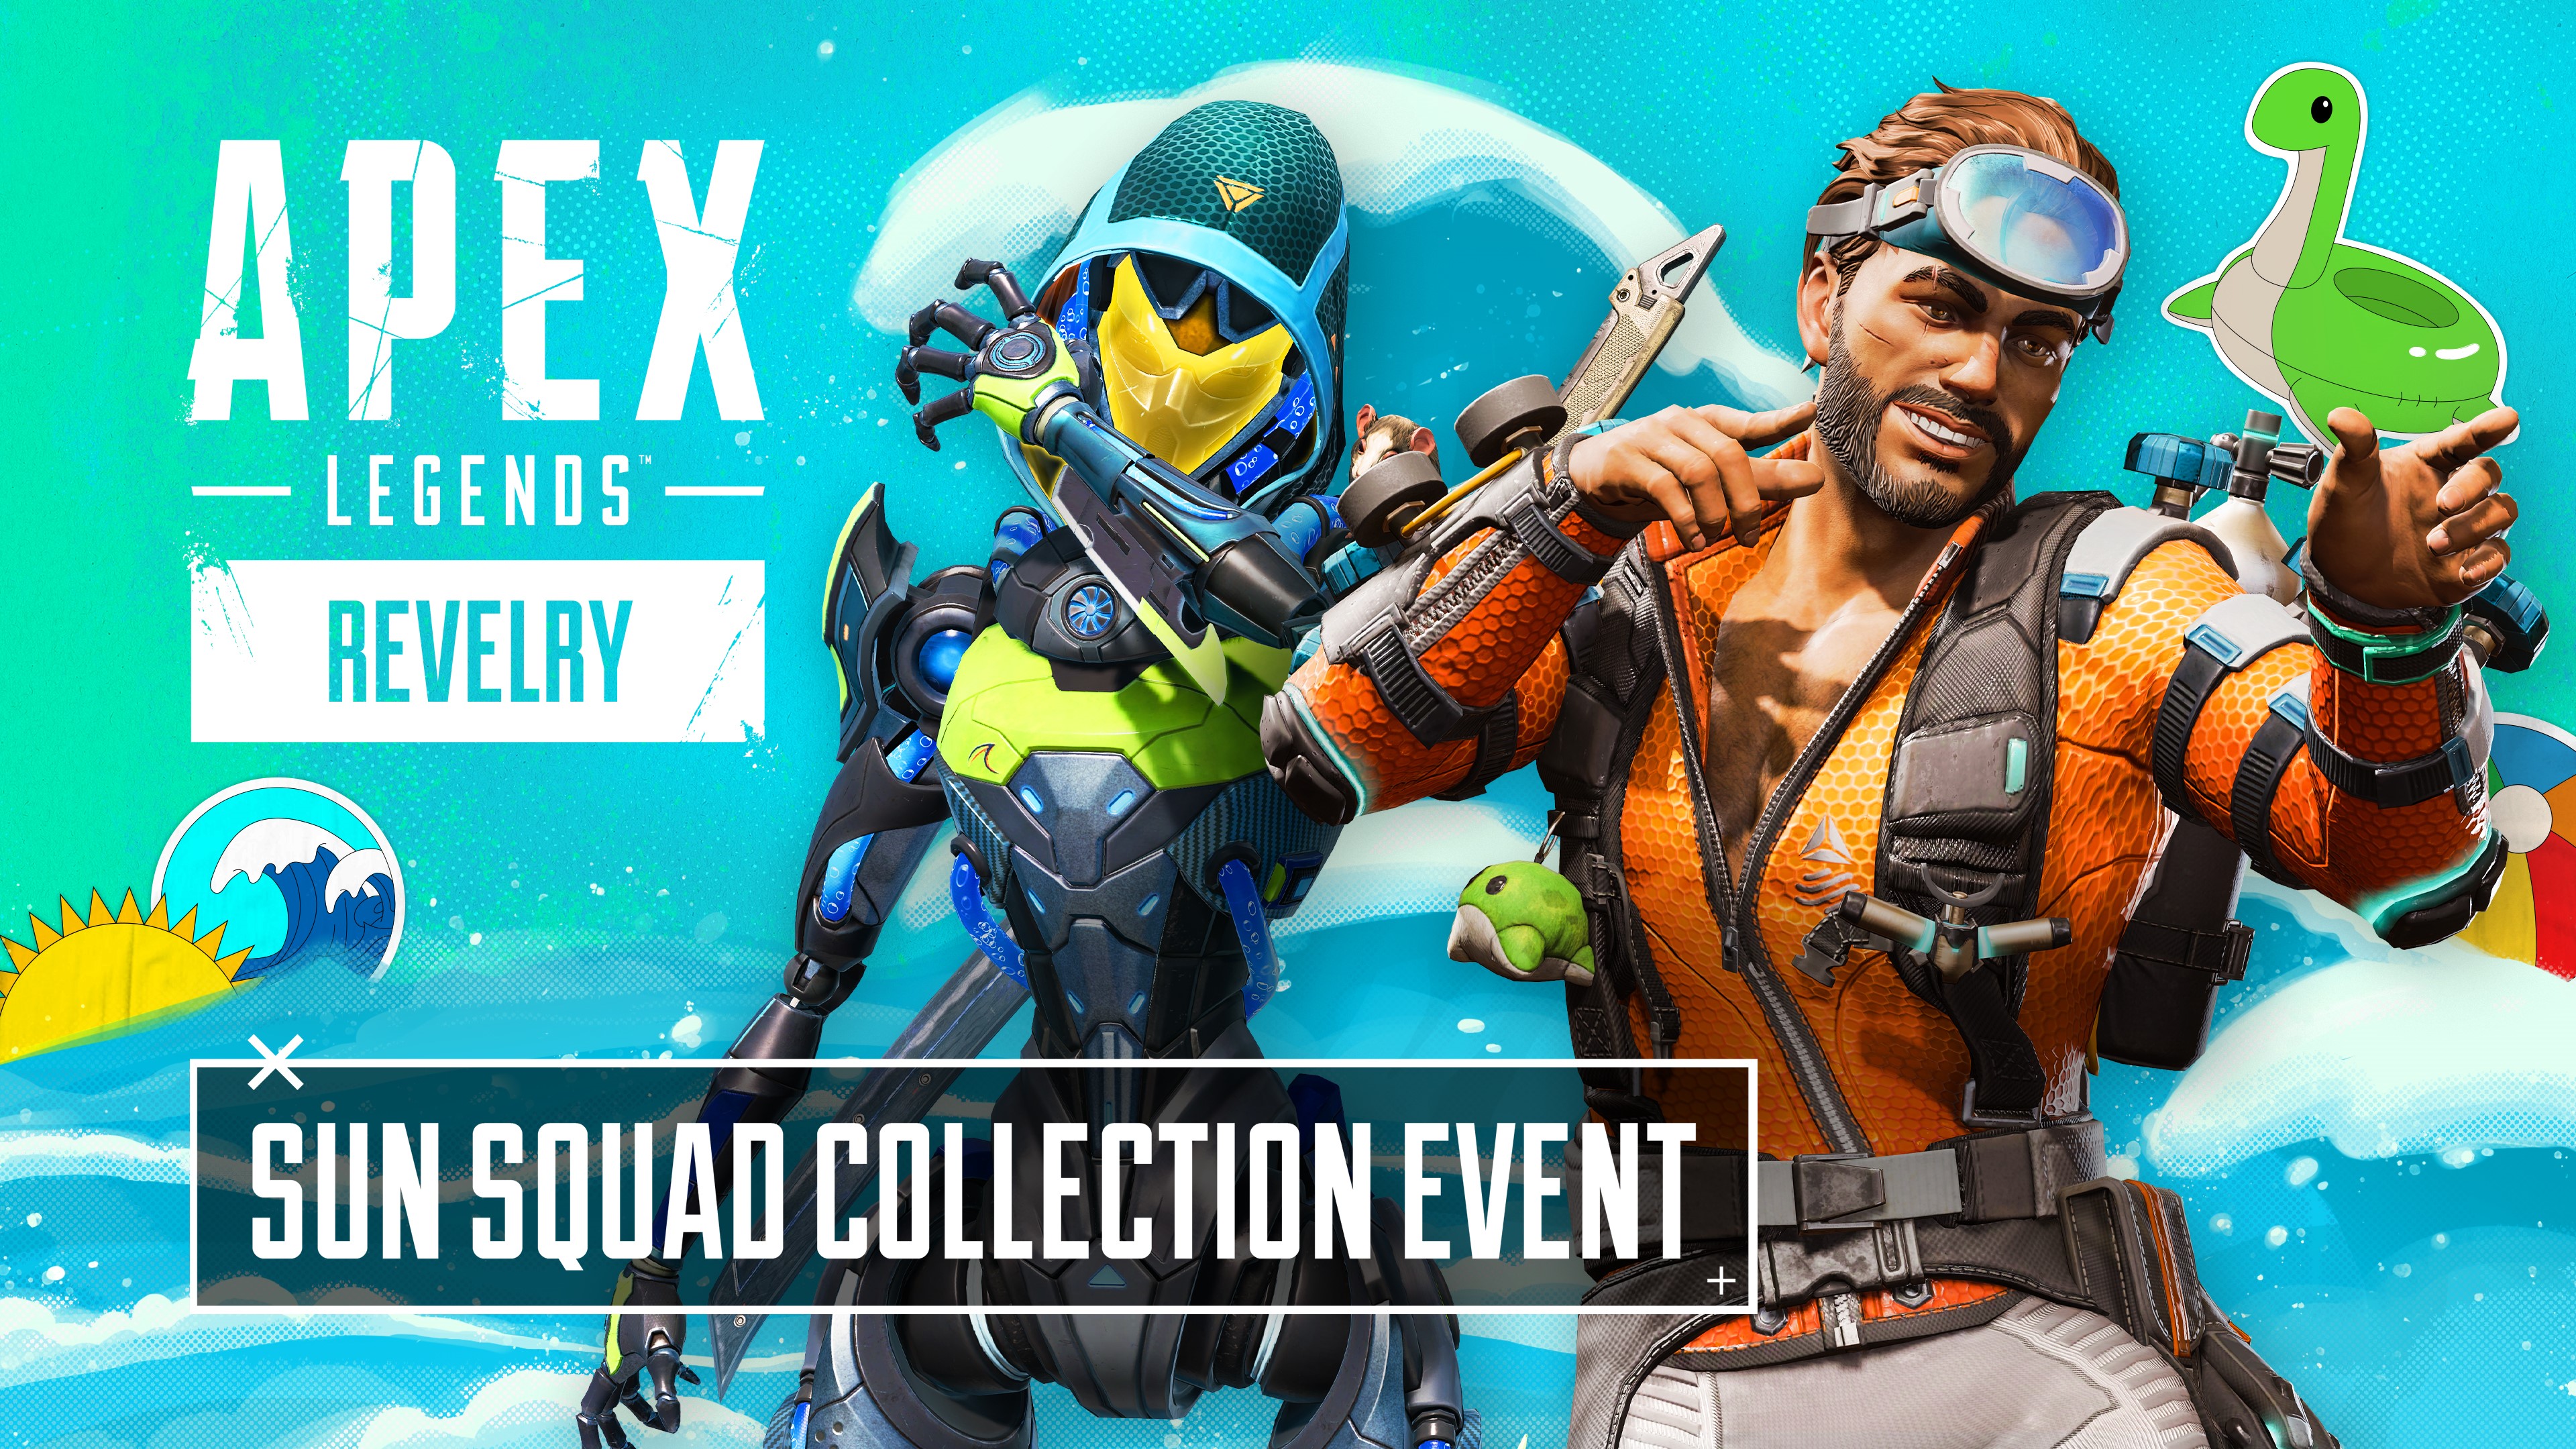 Apex Legends: Solar Squad Collection Event, March 28 – April 11